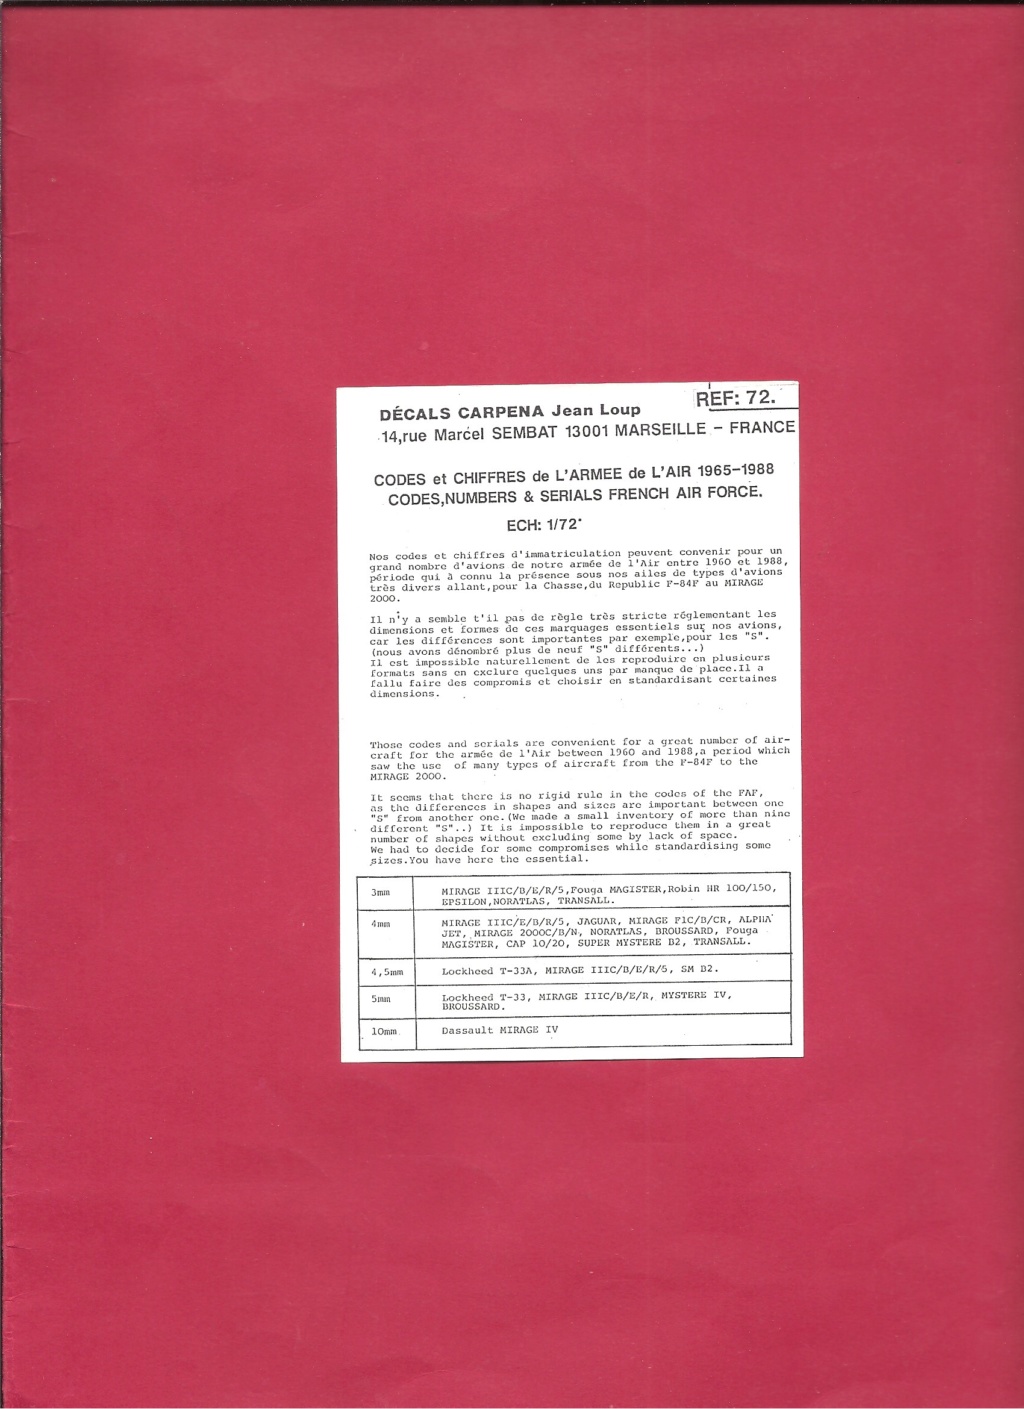 [CARPENA] Planche de décals  Codes et chiffres de l Armée de l Air 1965-1988 1/72ème  Réf 72.11 Carpen66